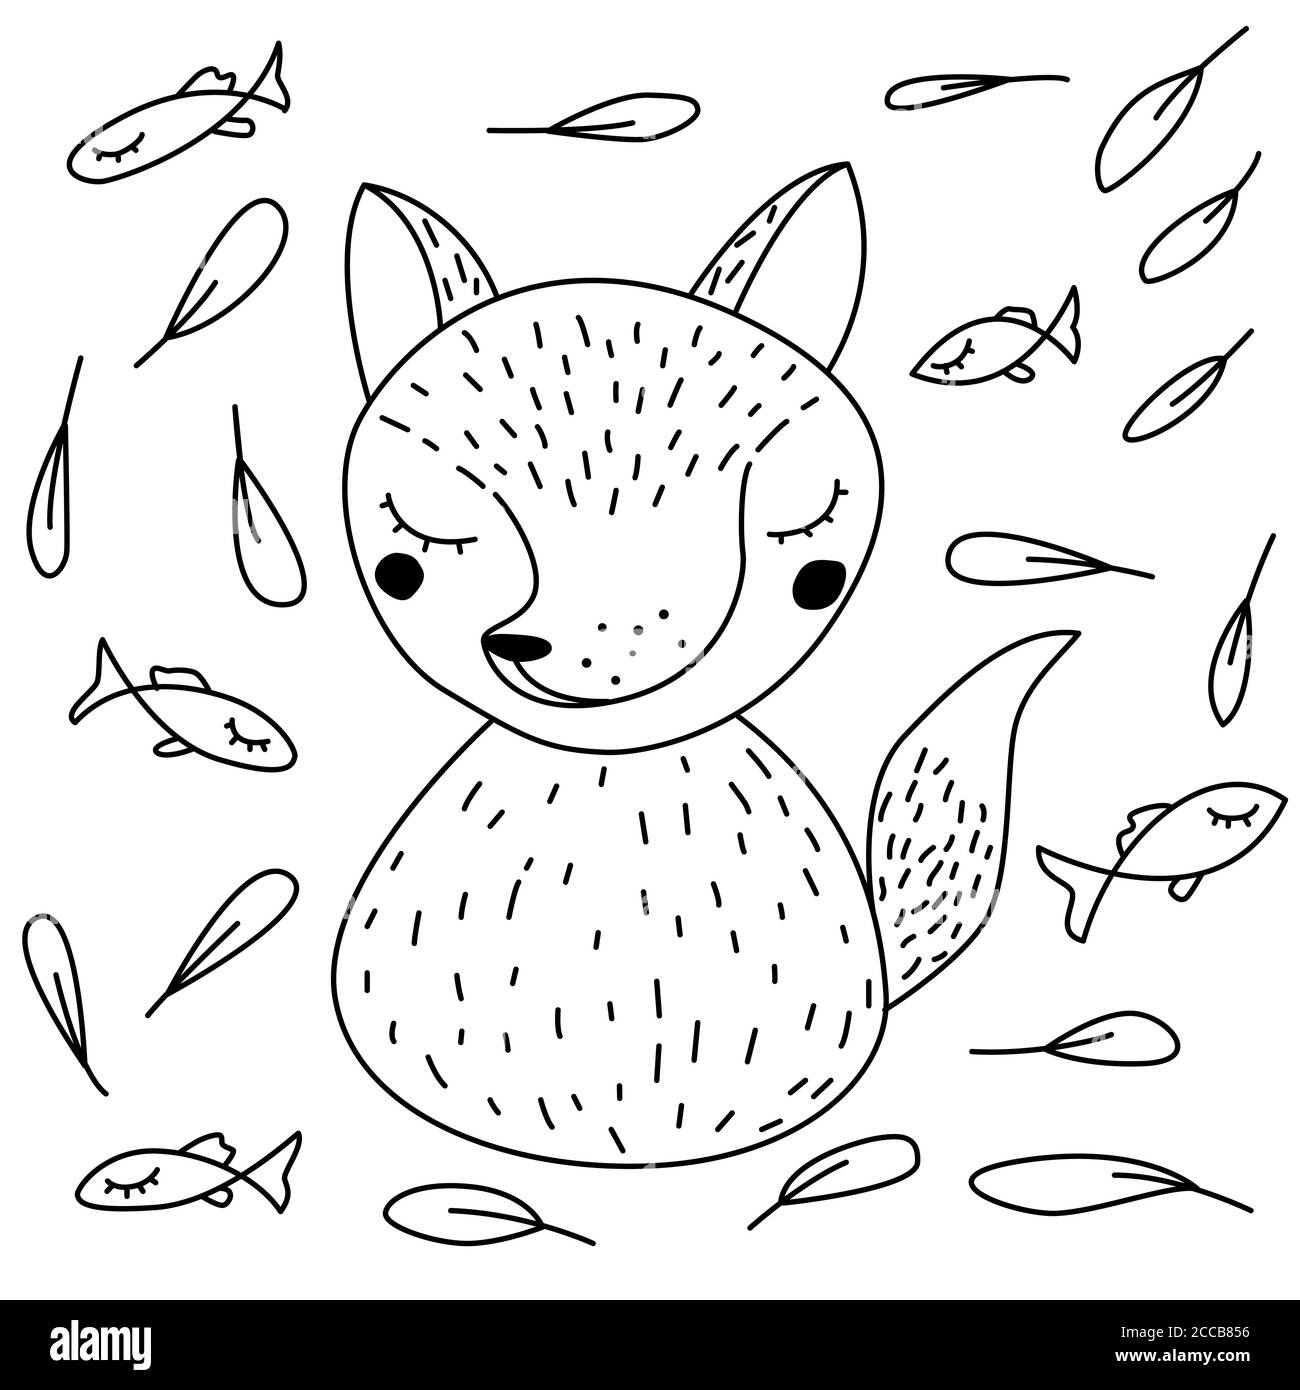 Volpe e pesce in stile scandinavo Doodle. Immagine vettoriale linea nera Illustrazione Vettoriale